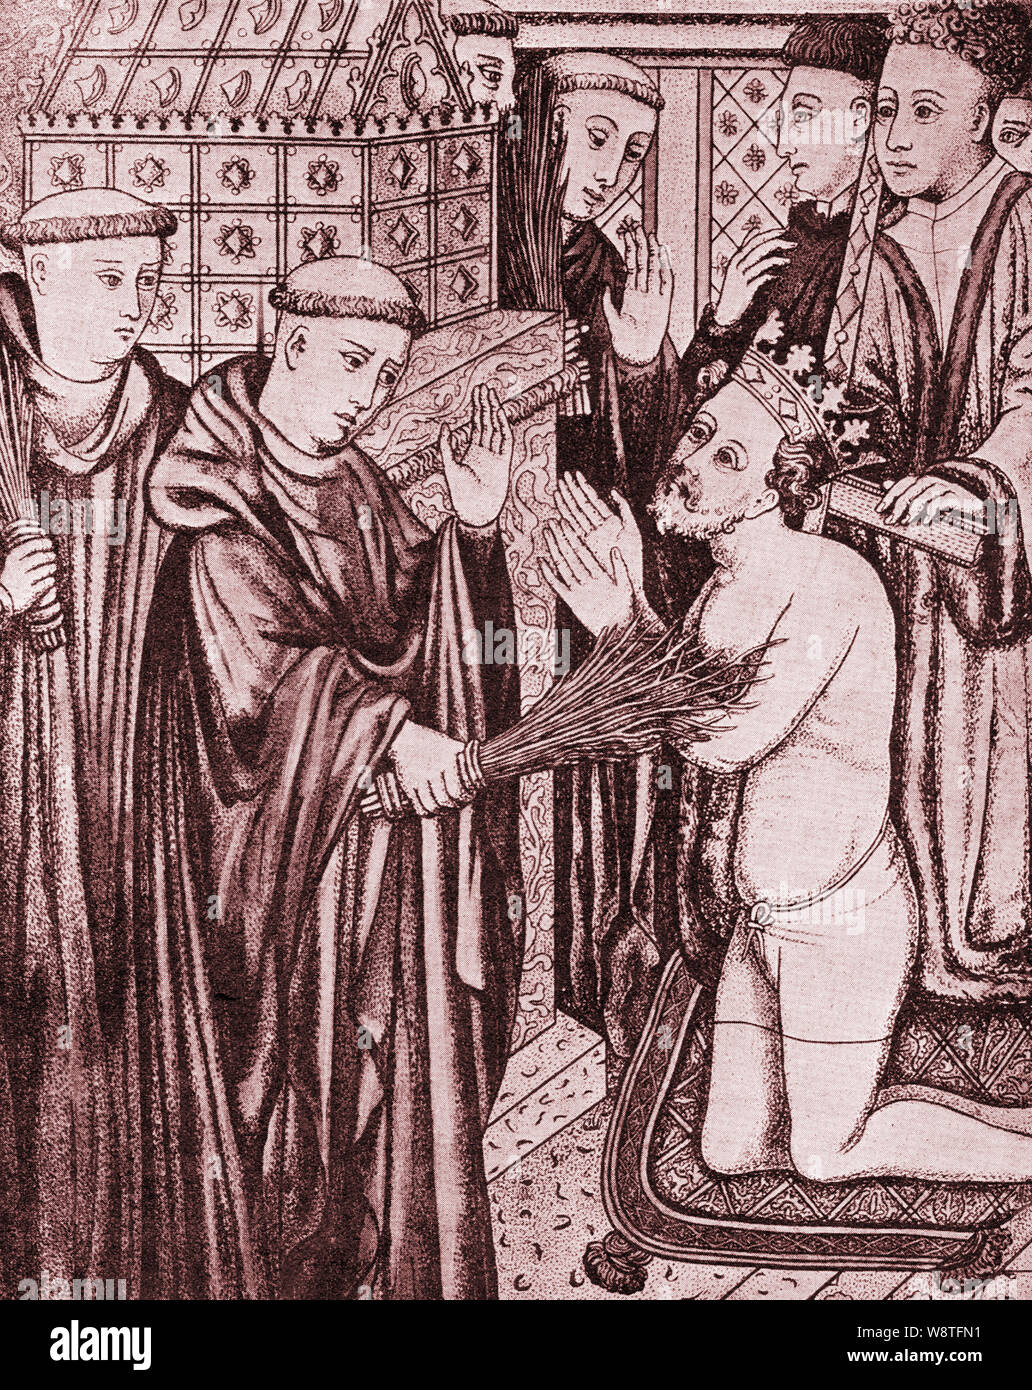 Il re Enrico II d'Inghilterra nel 1173 facendo penitenza dalla flagellazione davanti alla tomba di Thomas a Becket che egli aveva assassinato via Reginaldo FitzUrse, Hugh de Morville, William de Tracy e Richard le Breton nel 1170 (da un antico manoscritto) Foto Stock